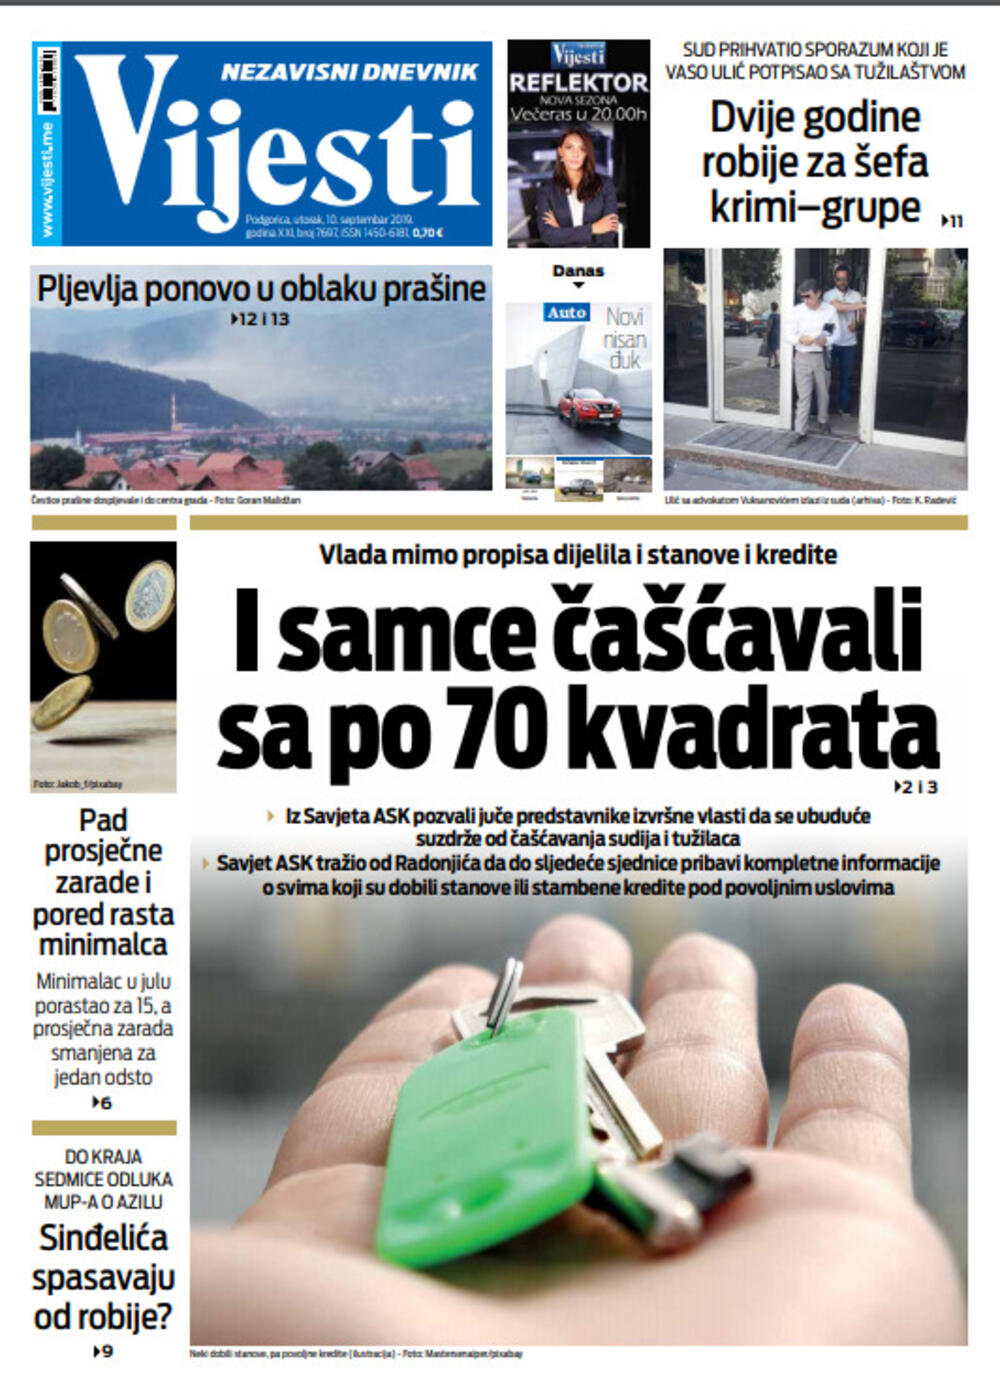 Naslovna strana "Vijesti" za 10. septembar, Foto: Vijesti